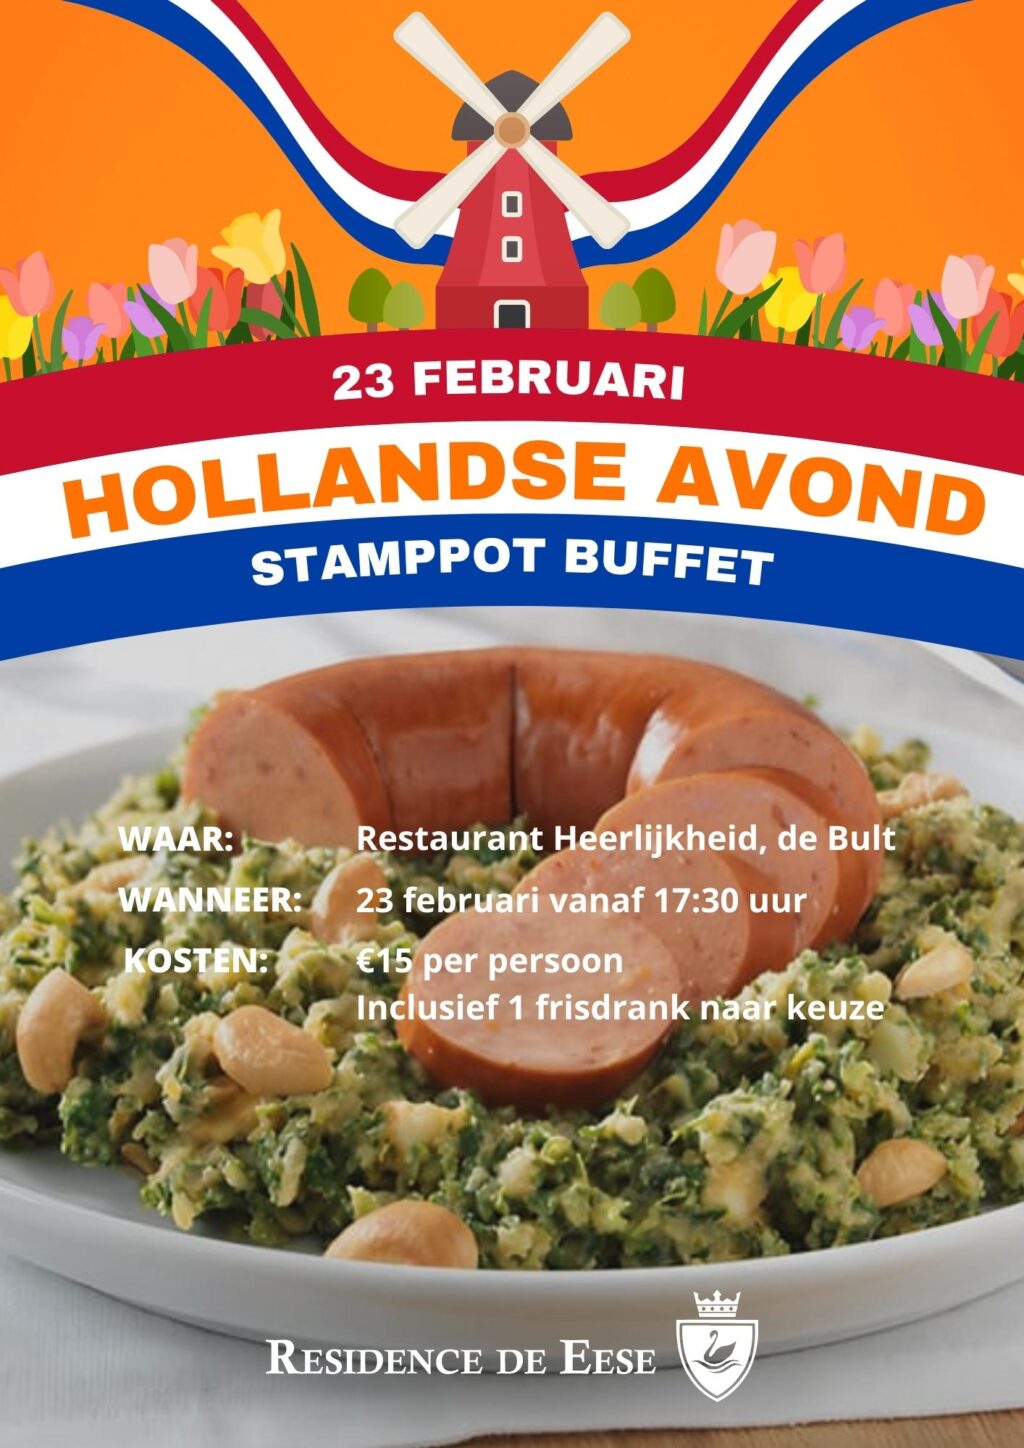 Hollandse avond restaurant Heerlijkheid